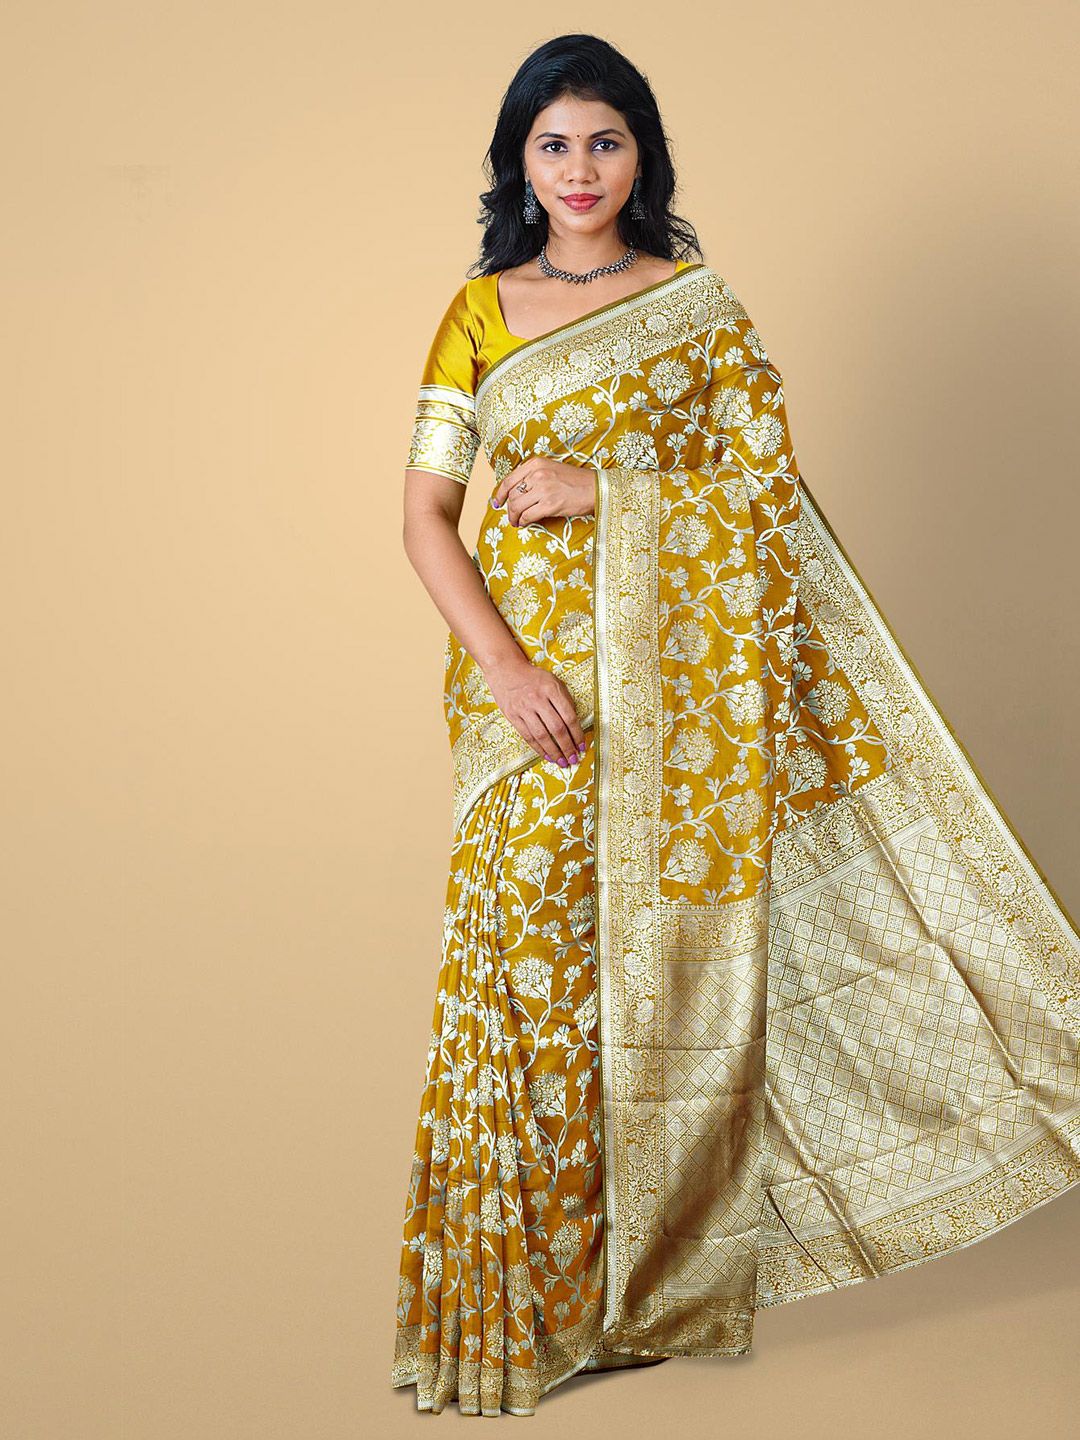 Kalamandir Mustard & Gold-Toned Floral Zari Silk Blend Saree Price in India